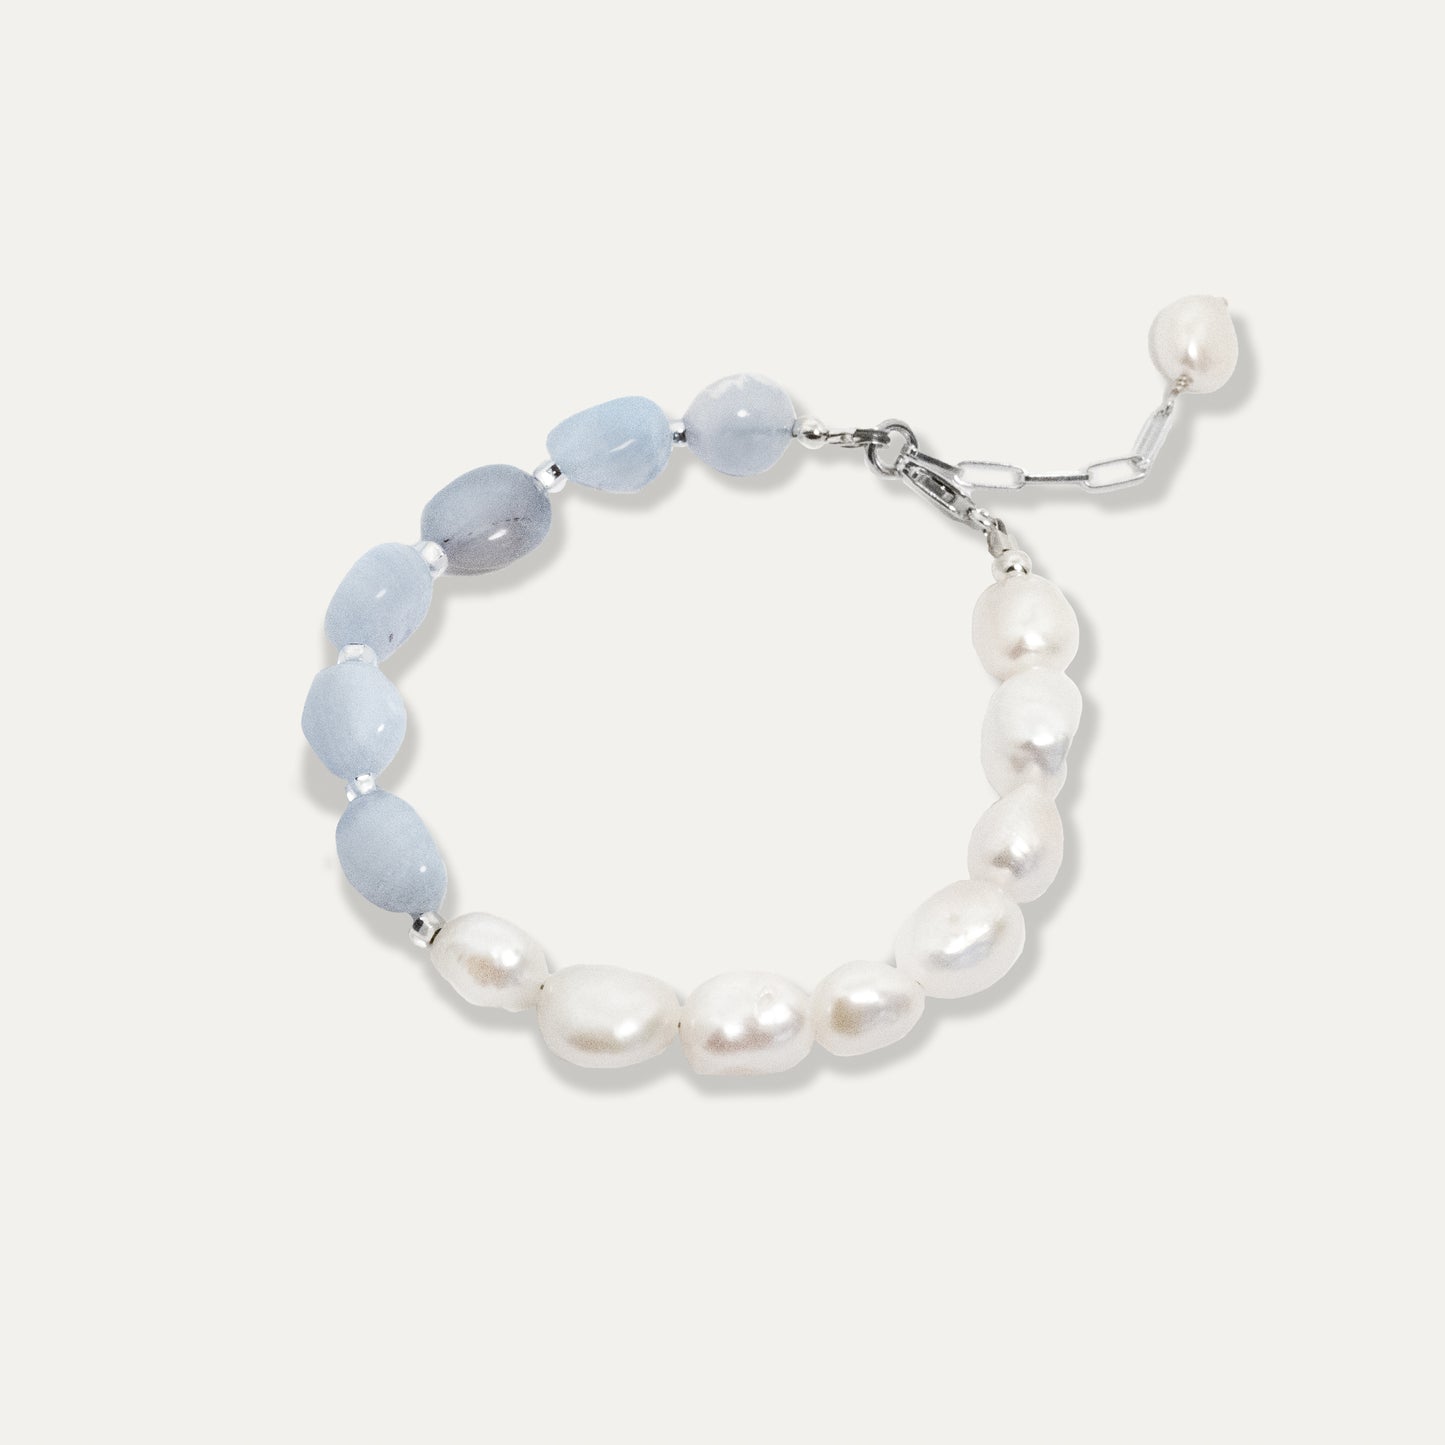 Half n' Half Bracelet - Pearl + Blue Lace Agate